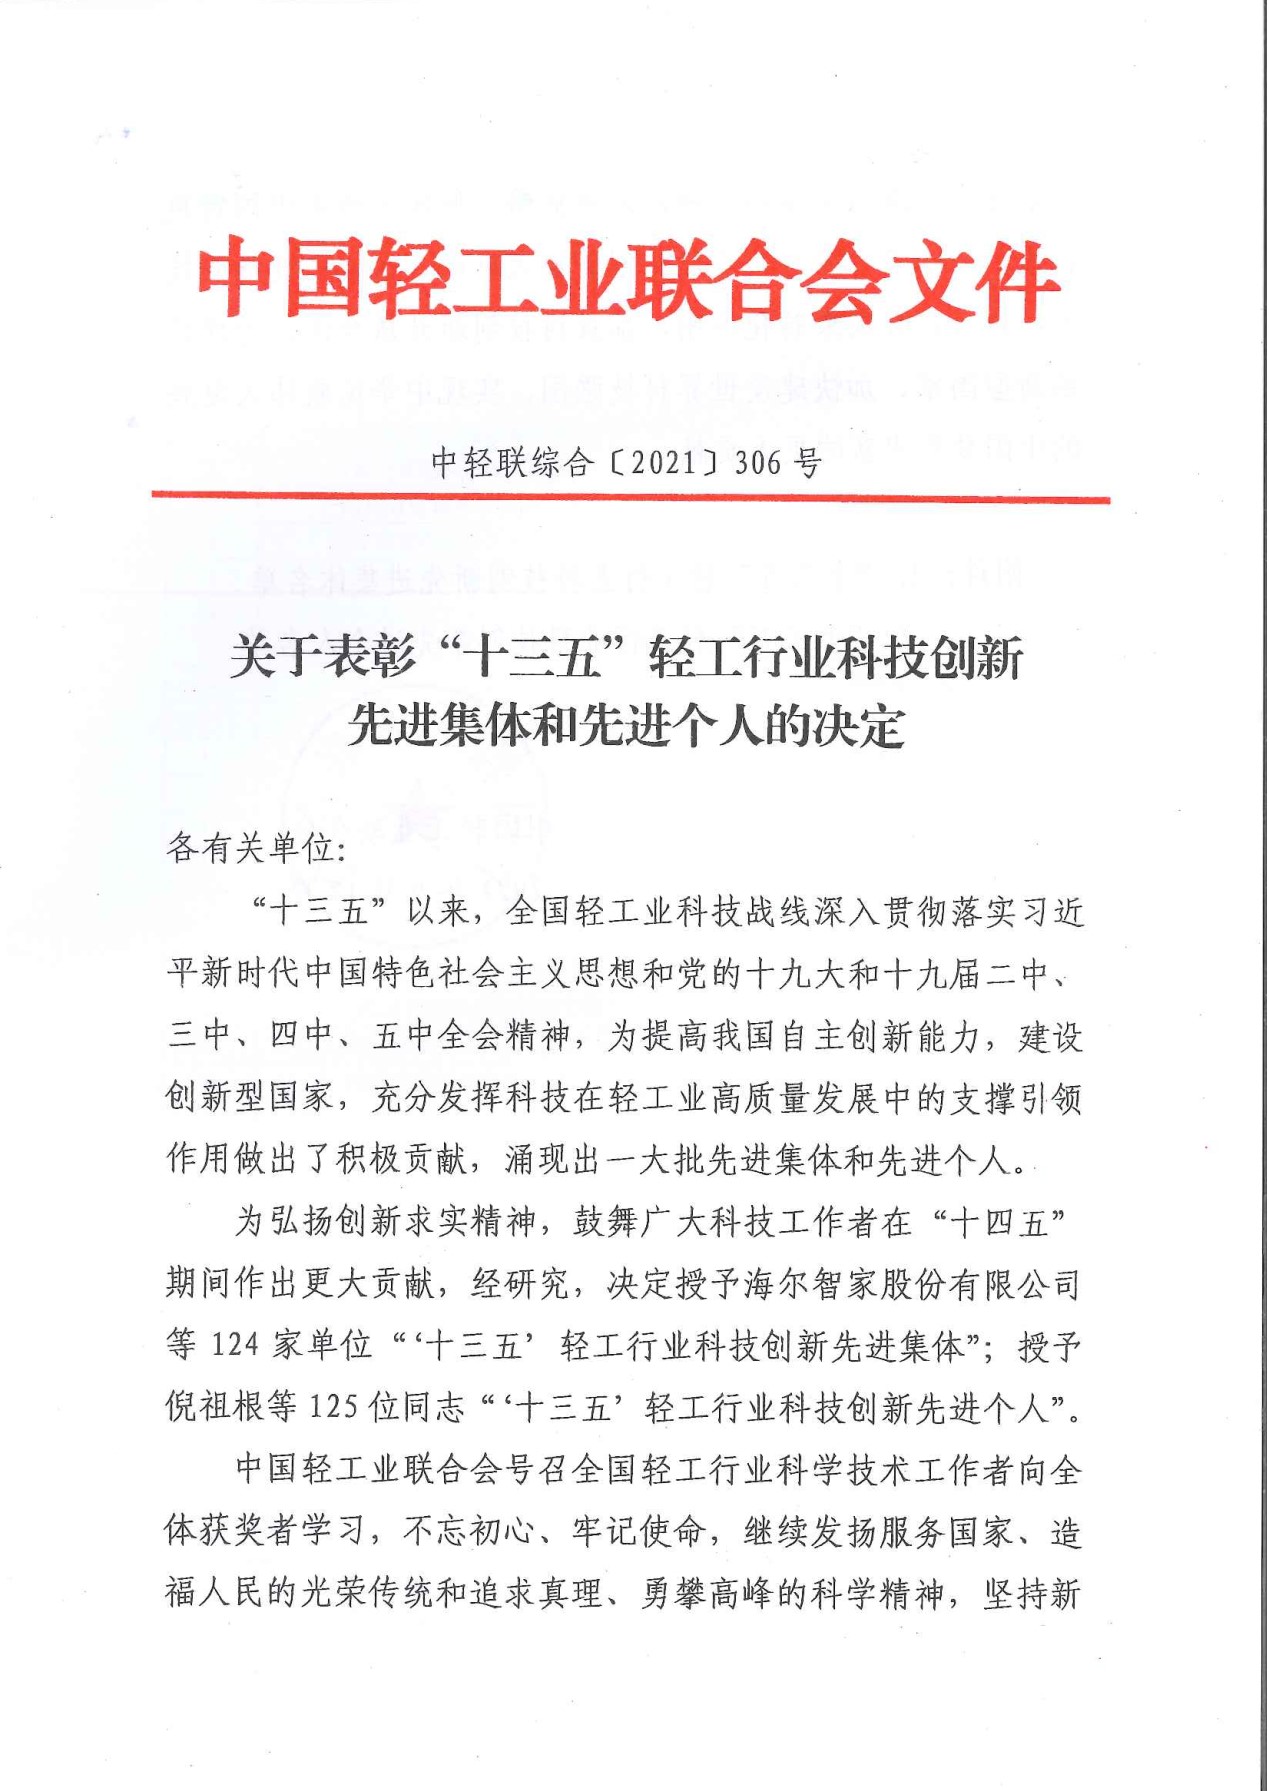 石荣莹副总经理荣获"十三五”轻工行业科技创新先进个人称号